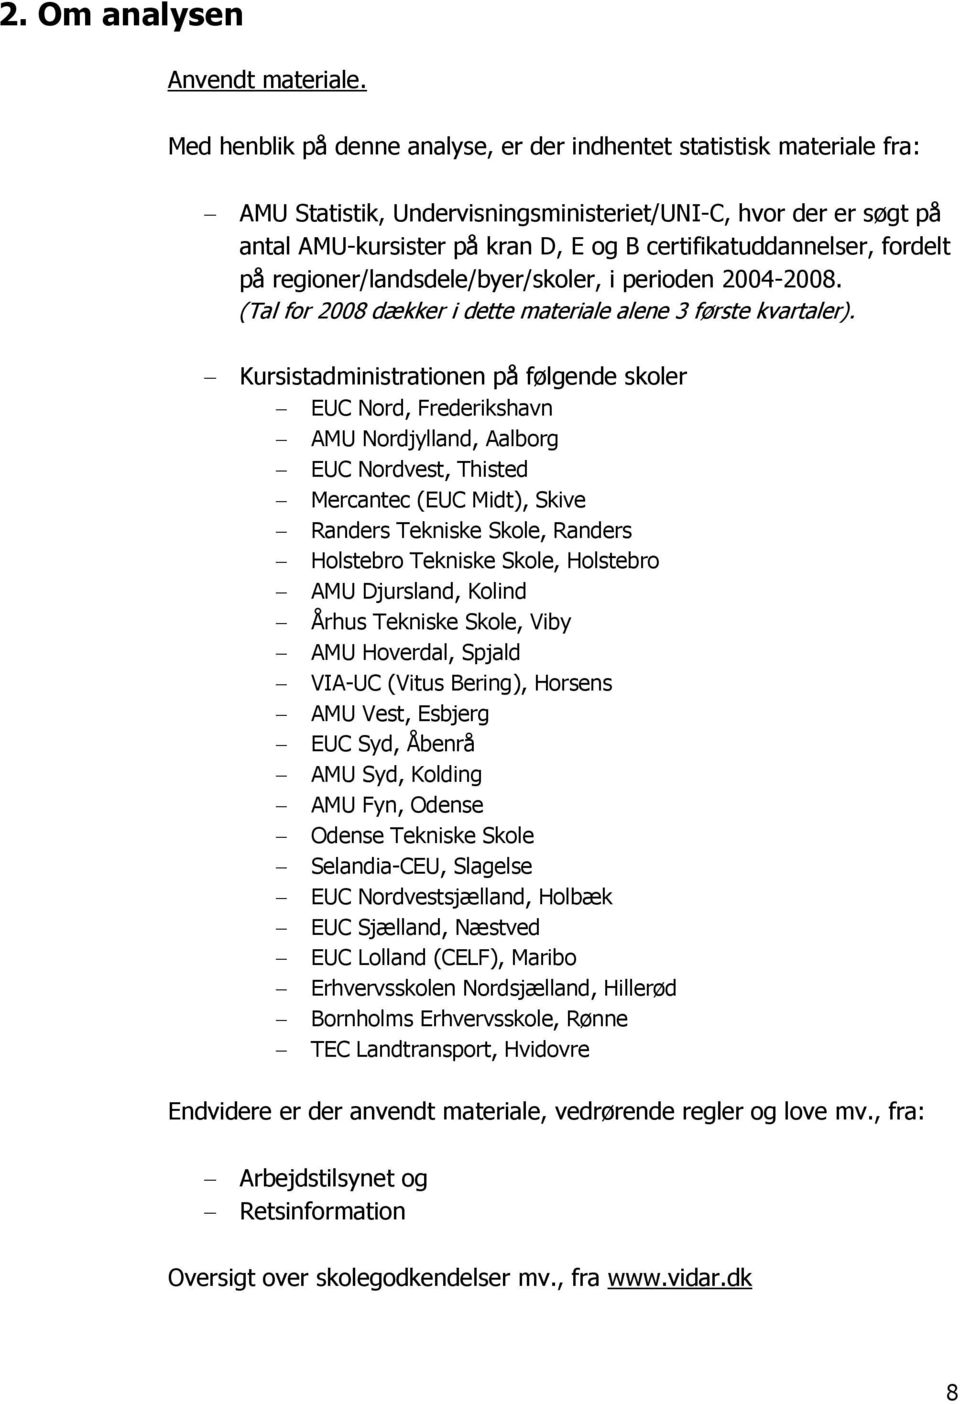 Vurdering af udbuddet af kranuddannelser i Danmark (kat. D, E & B) - PDF  Gratis download